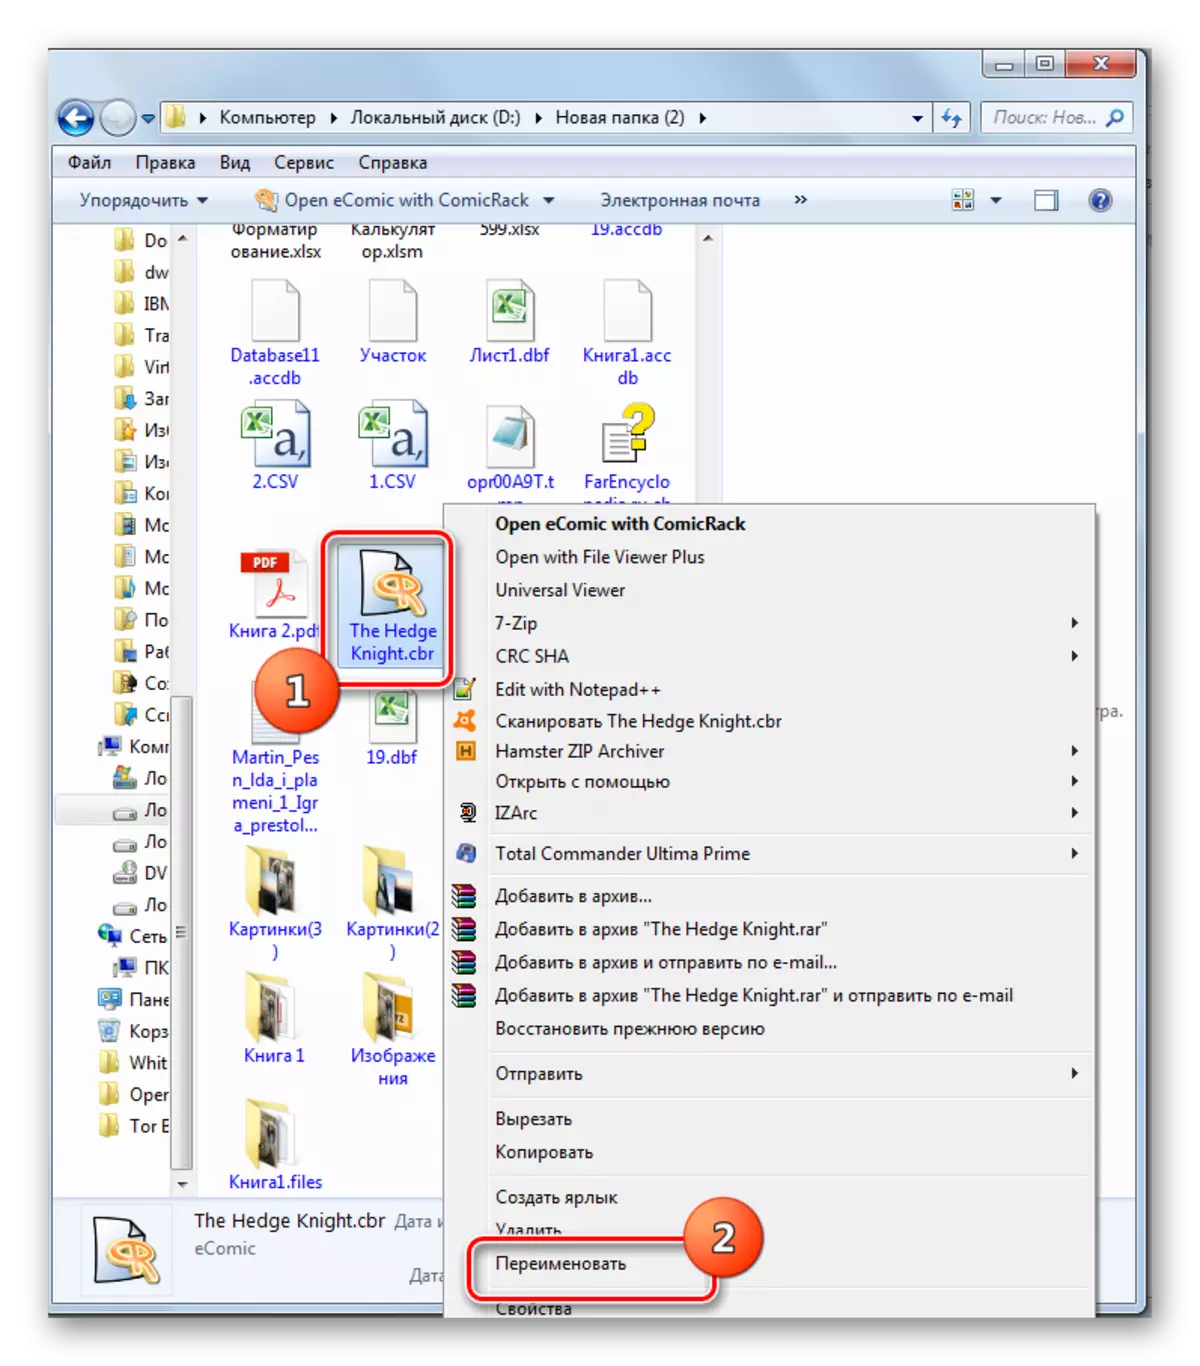 Idite na preimenovanje datoteke putem kontekstnog izbornika u Exploreru u sustavu Windows 7